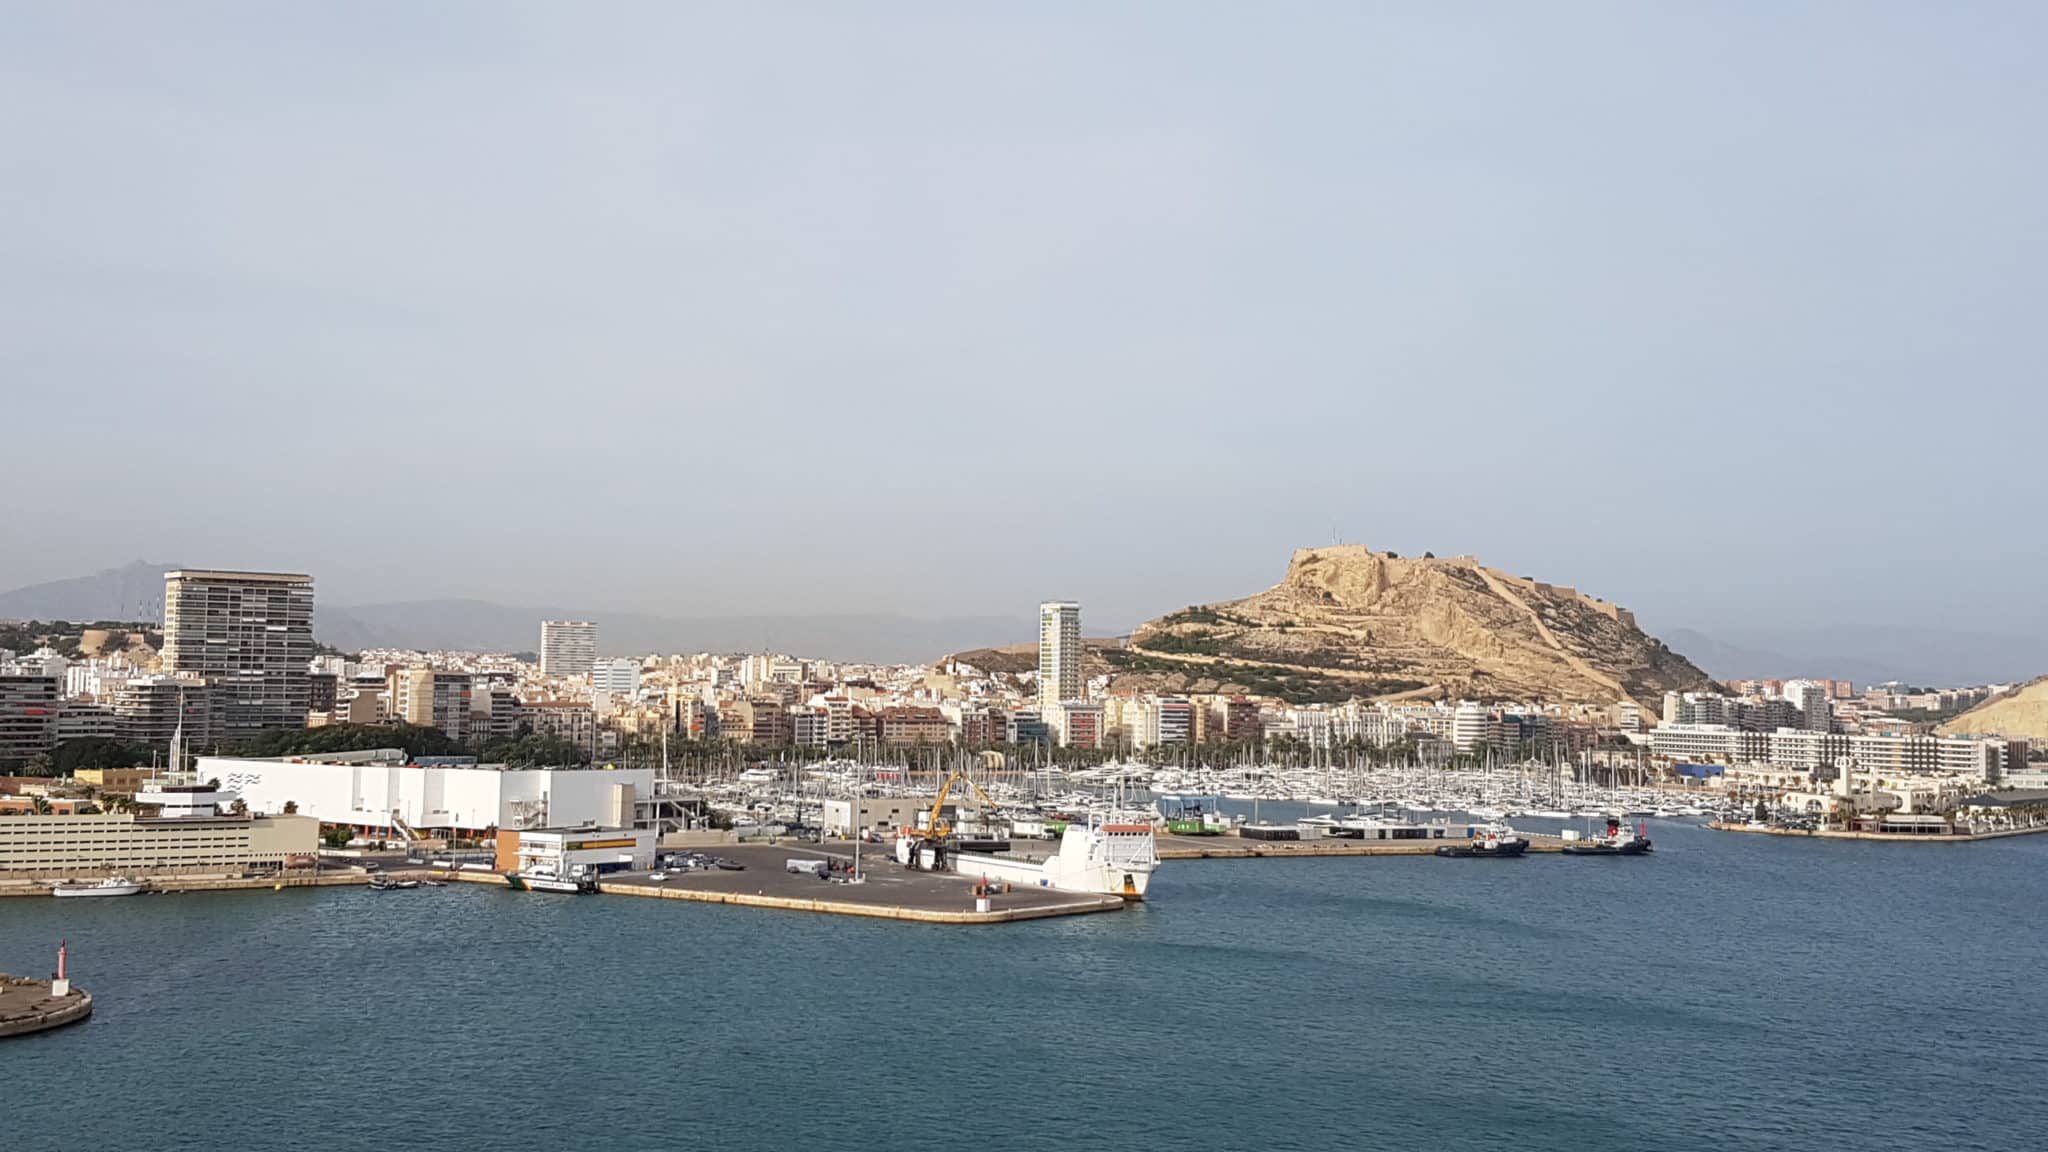 Costa Magica en Alicante, visita en puerto - CruceroAdicto.com